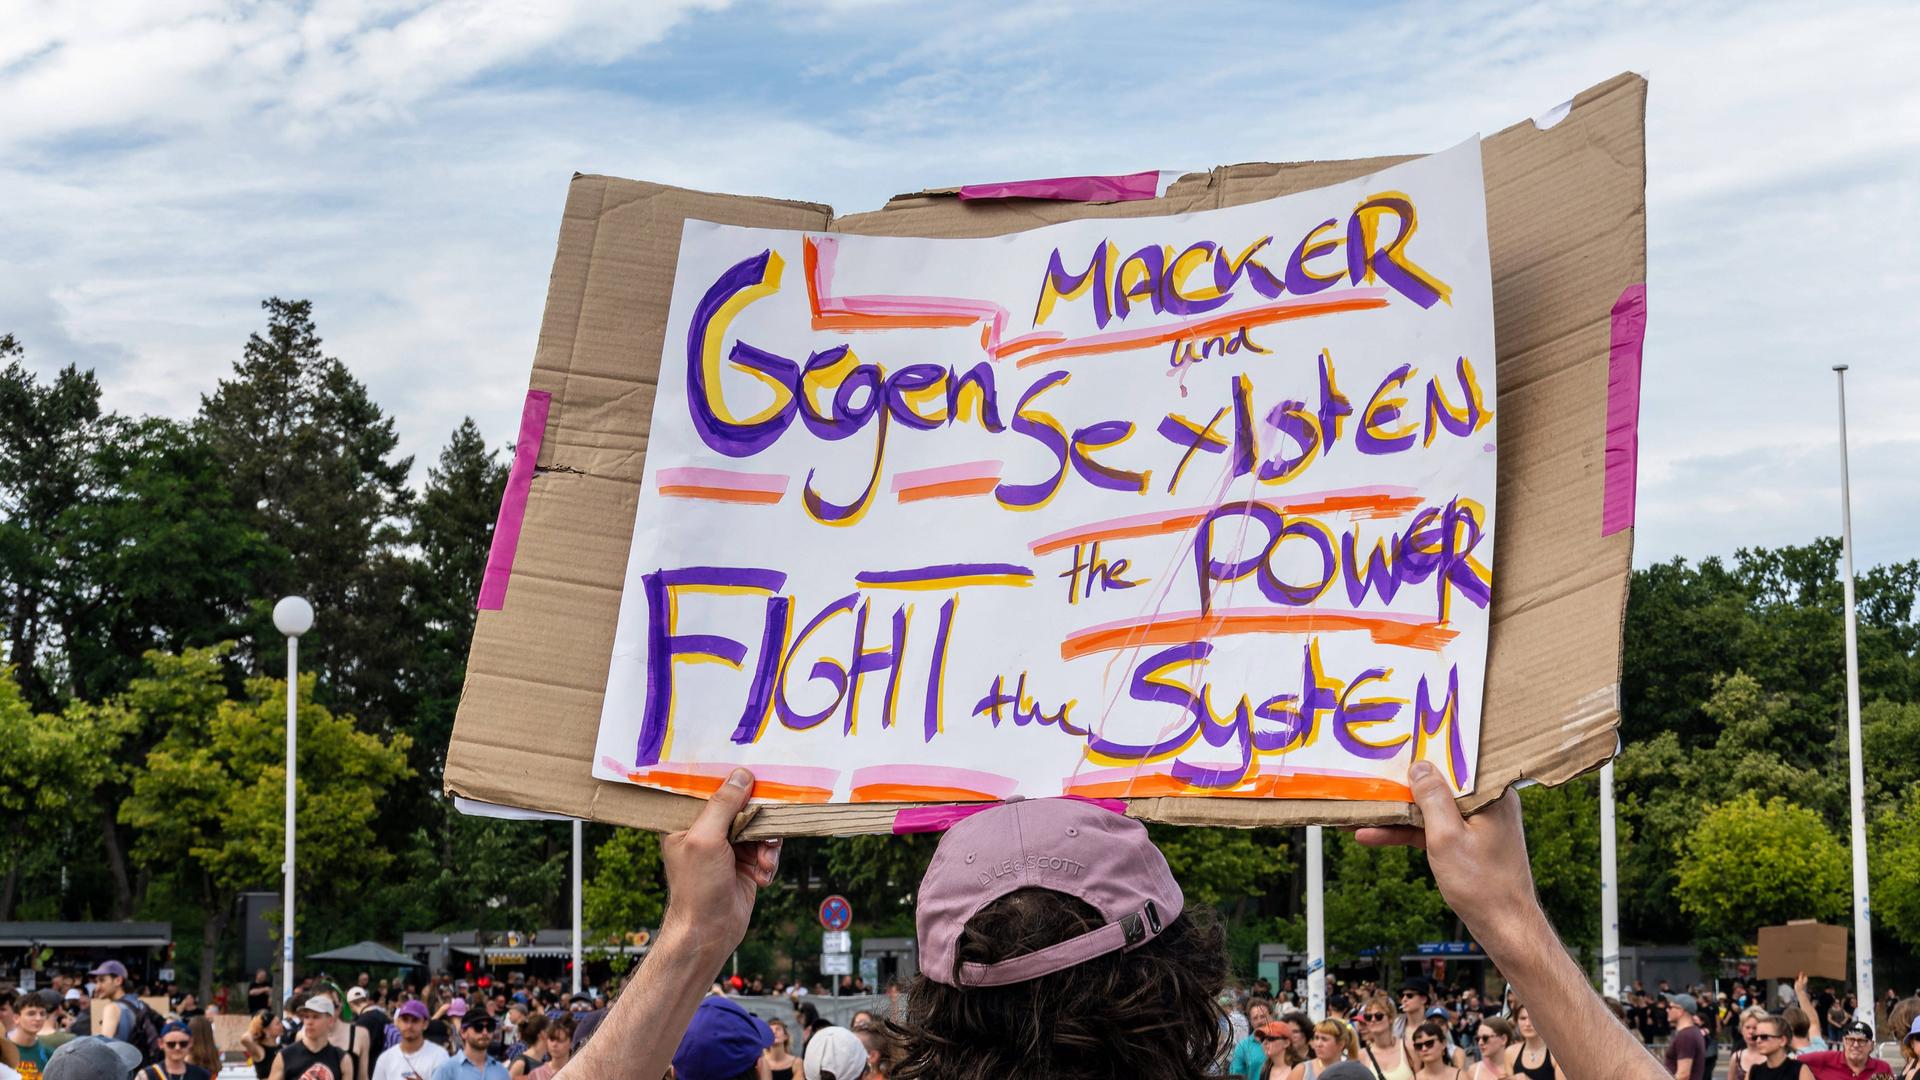 Im Umfeld des Berlin-Konzerts der Band Rammstein am 15. Juli 2023 hält eine Person, die nur von hinten zu sehen ist, ein Transparent in die Höhe: Darauf steht: "Gegen Macker und Sexisten: Fight the Power, the System"